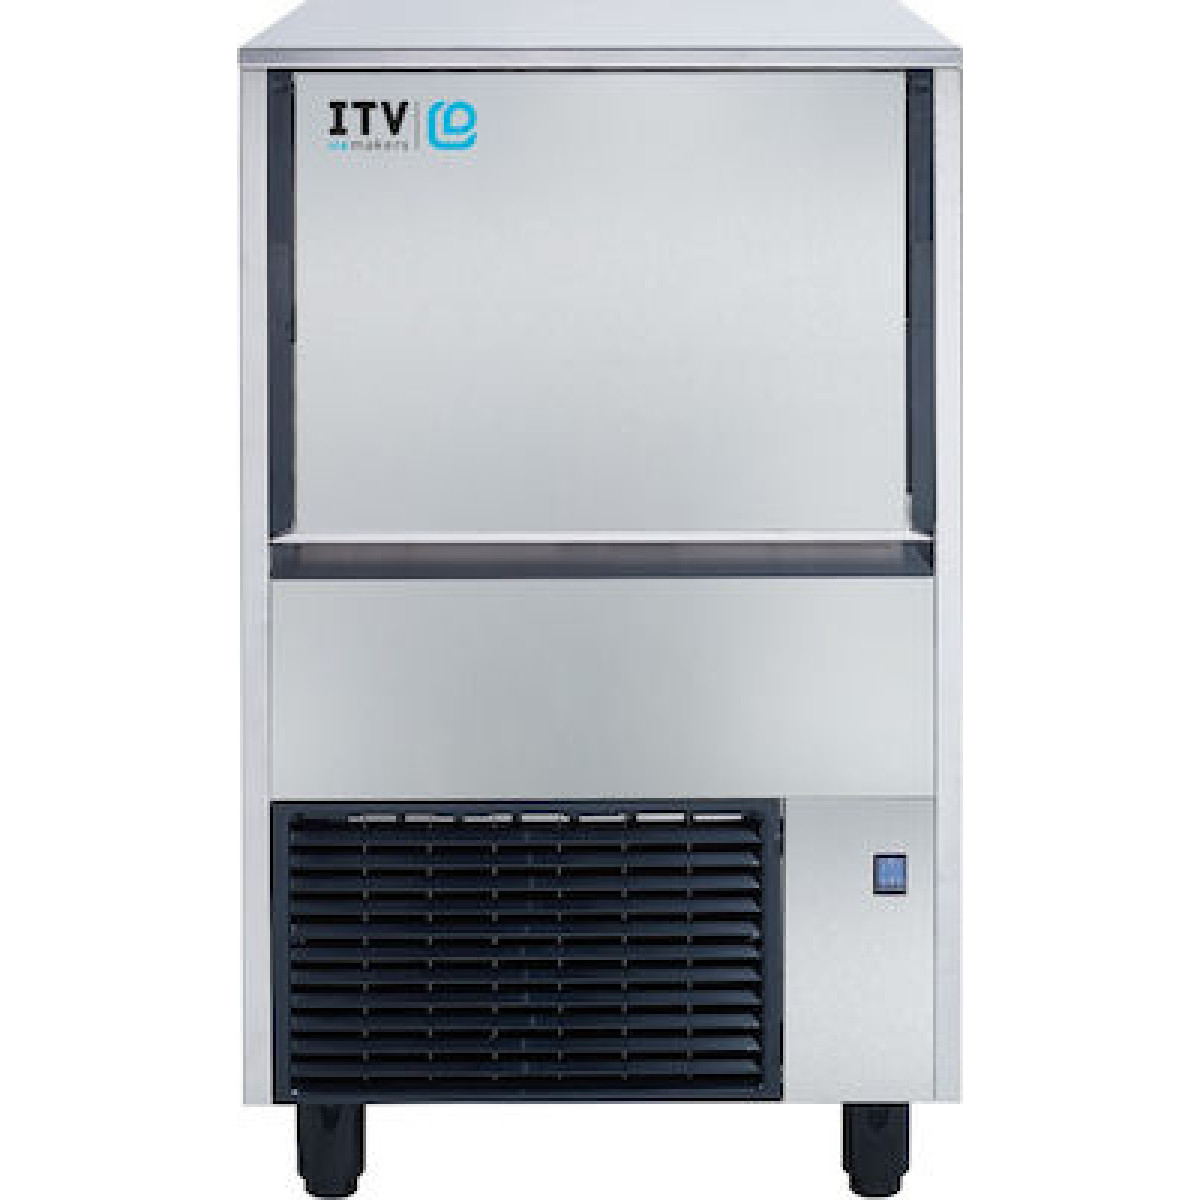 Παγομηχανή ITV Quasar NGQ 40A με Λειτουργία Ανάδευσης Ημερήσια Παραγωγή 45kg  Παγομηχανές